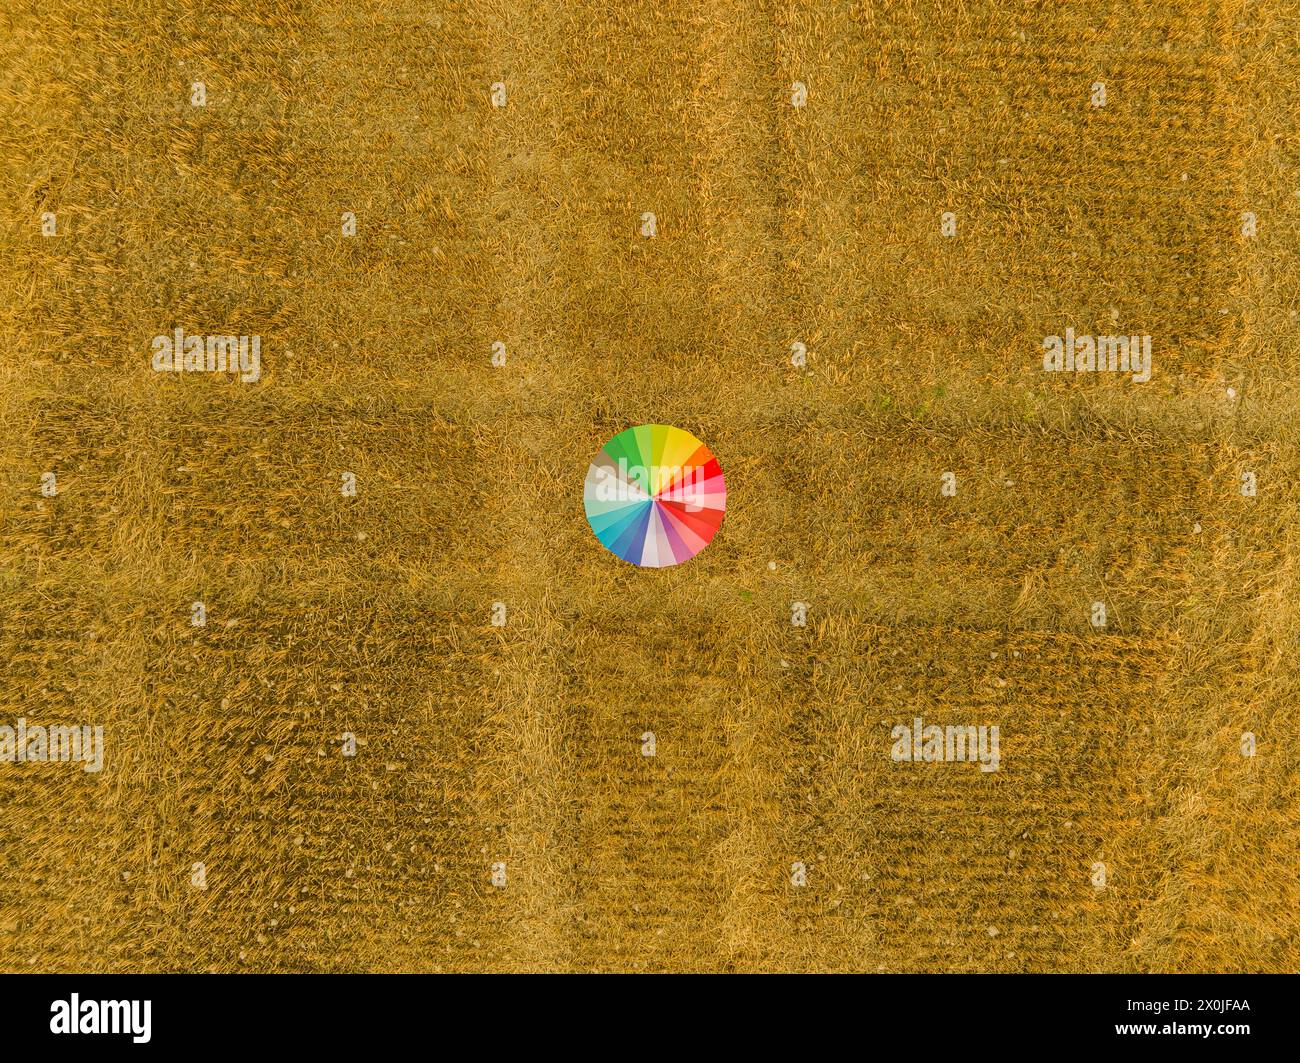 Avec le parapluie coloré sur un champ de chaume, champ de maïs, paille, contraste Banque D'Images